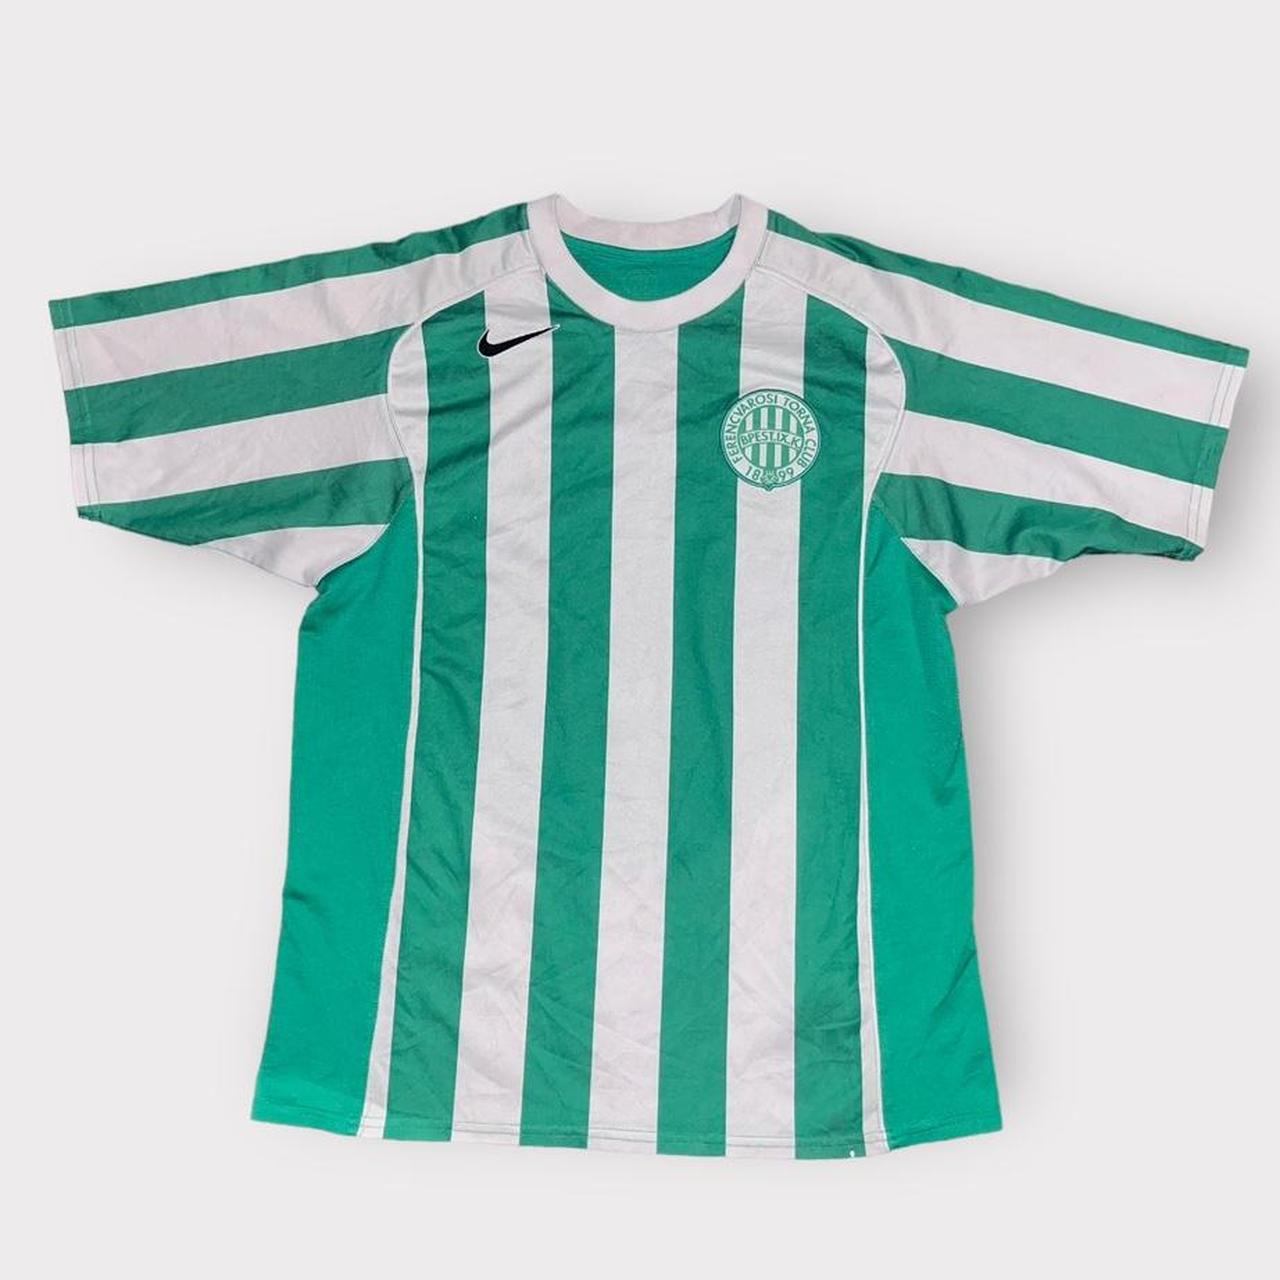 Ferencvárosi TC Home 2017/2018 Football Shirt - Club Football Shirts